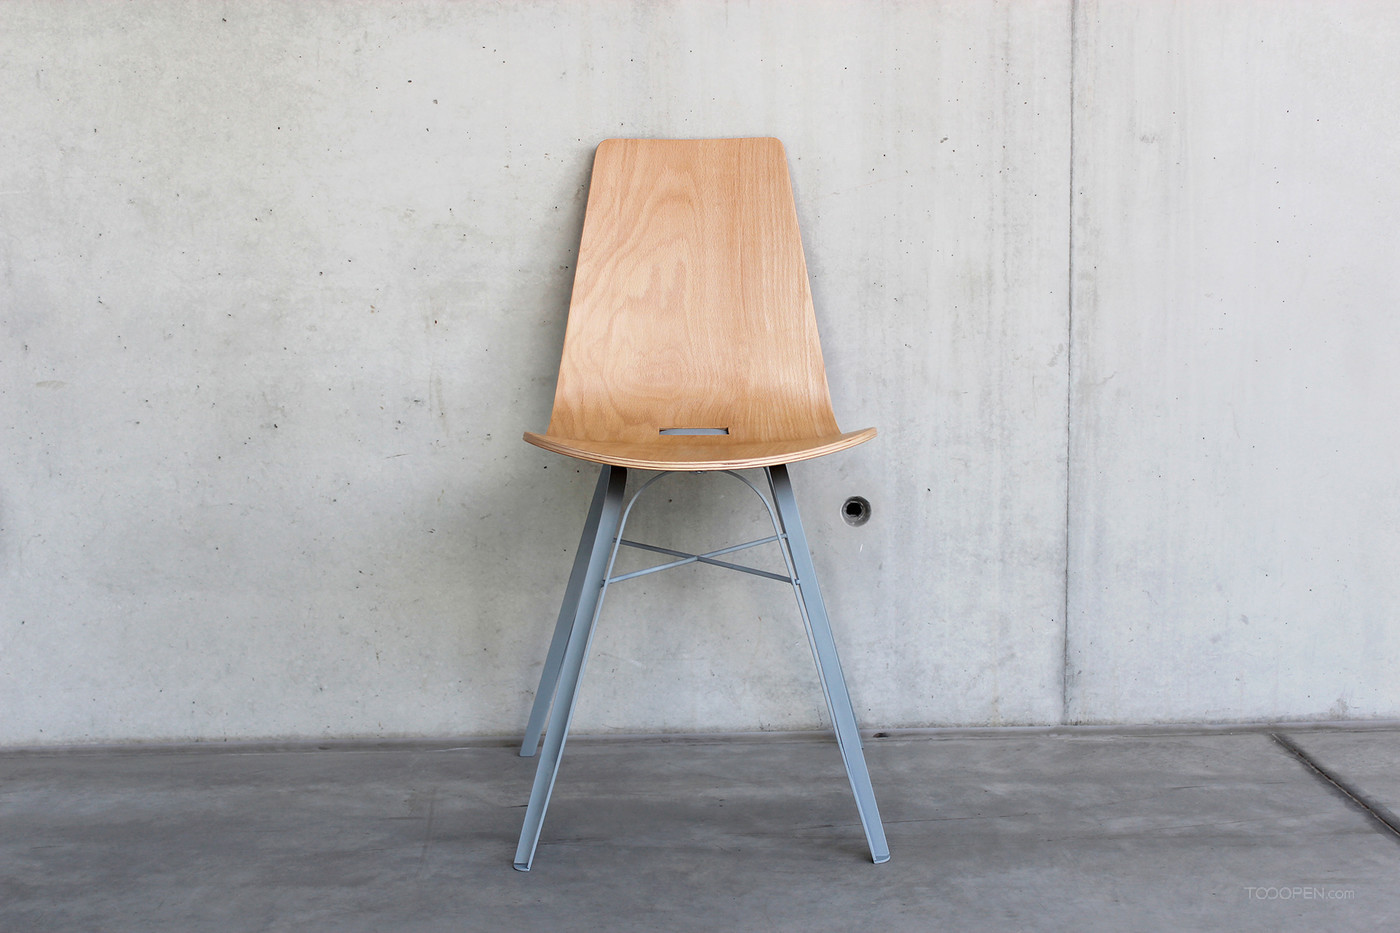 国外创意钢脚木椅家具设计作品欣赏-04